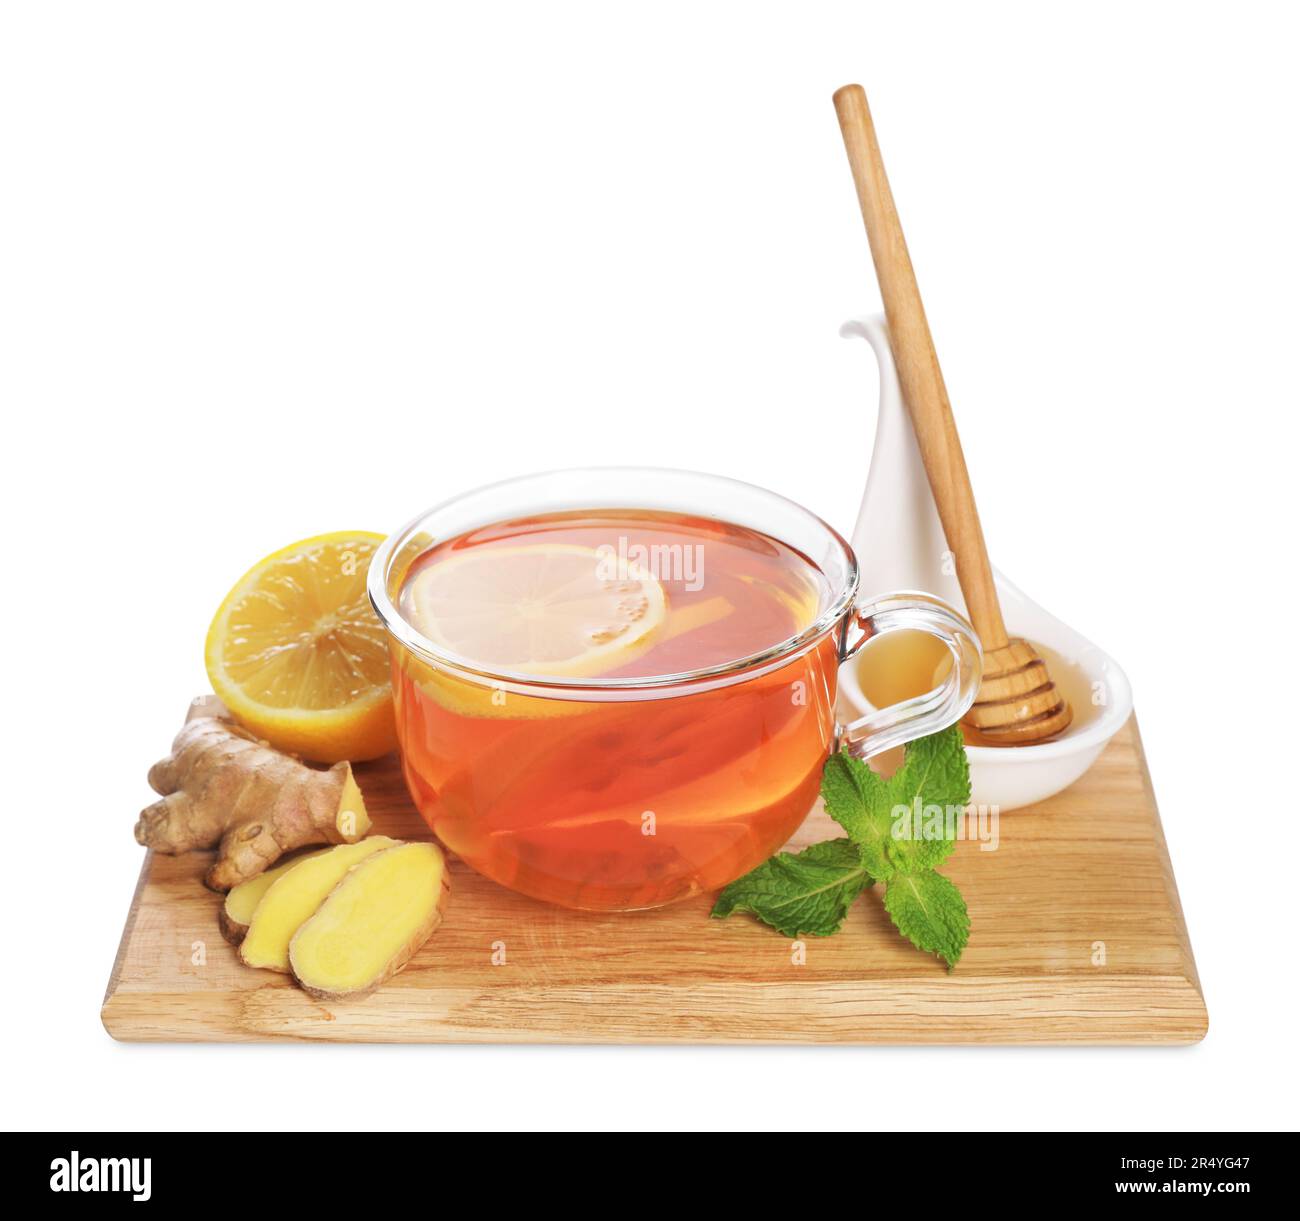 Planche en bois avec délicieux thé au gingembre et ingrédients sur fond blanc Banque D'Images